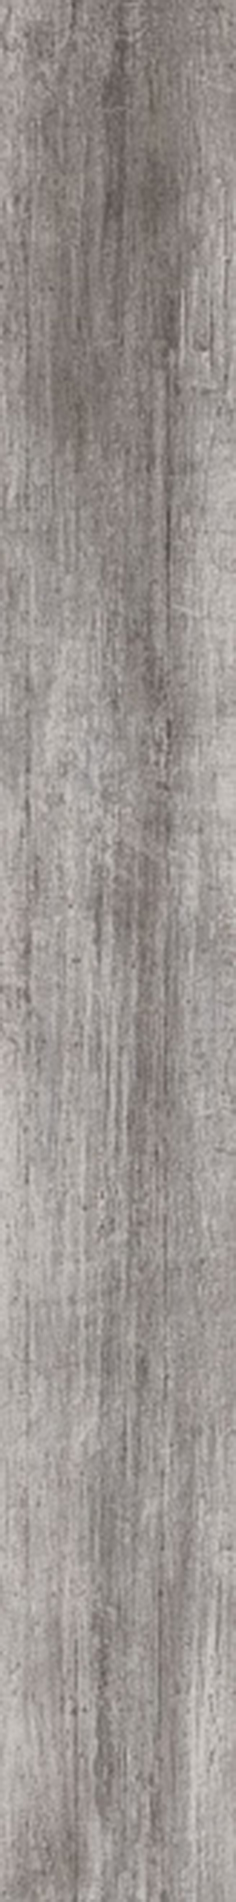  Керамогранит Антик Вуд серый обрезной 20х160 производителя KERAMA MARAZZI